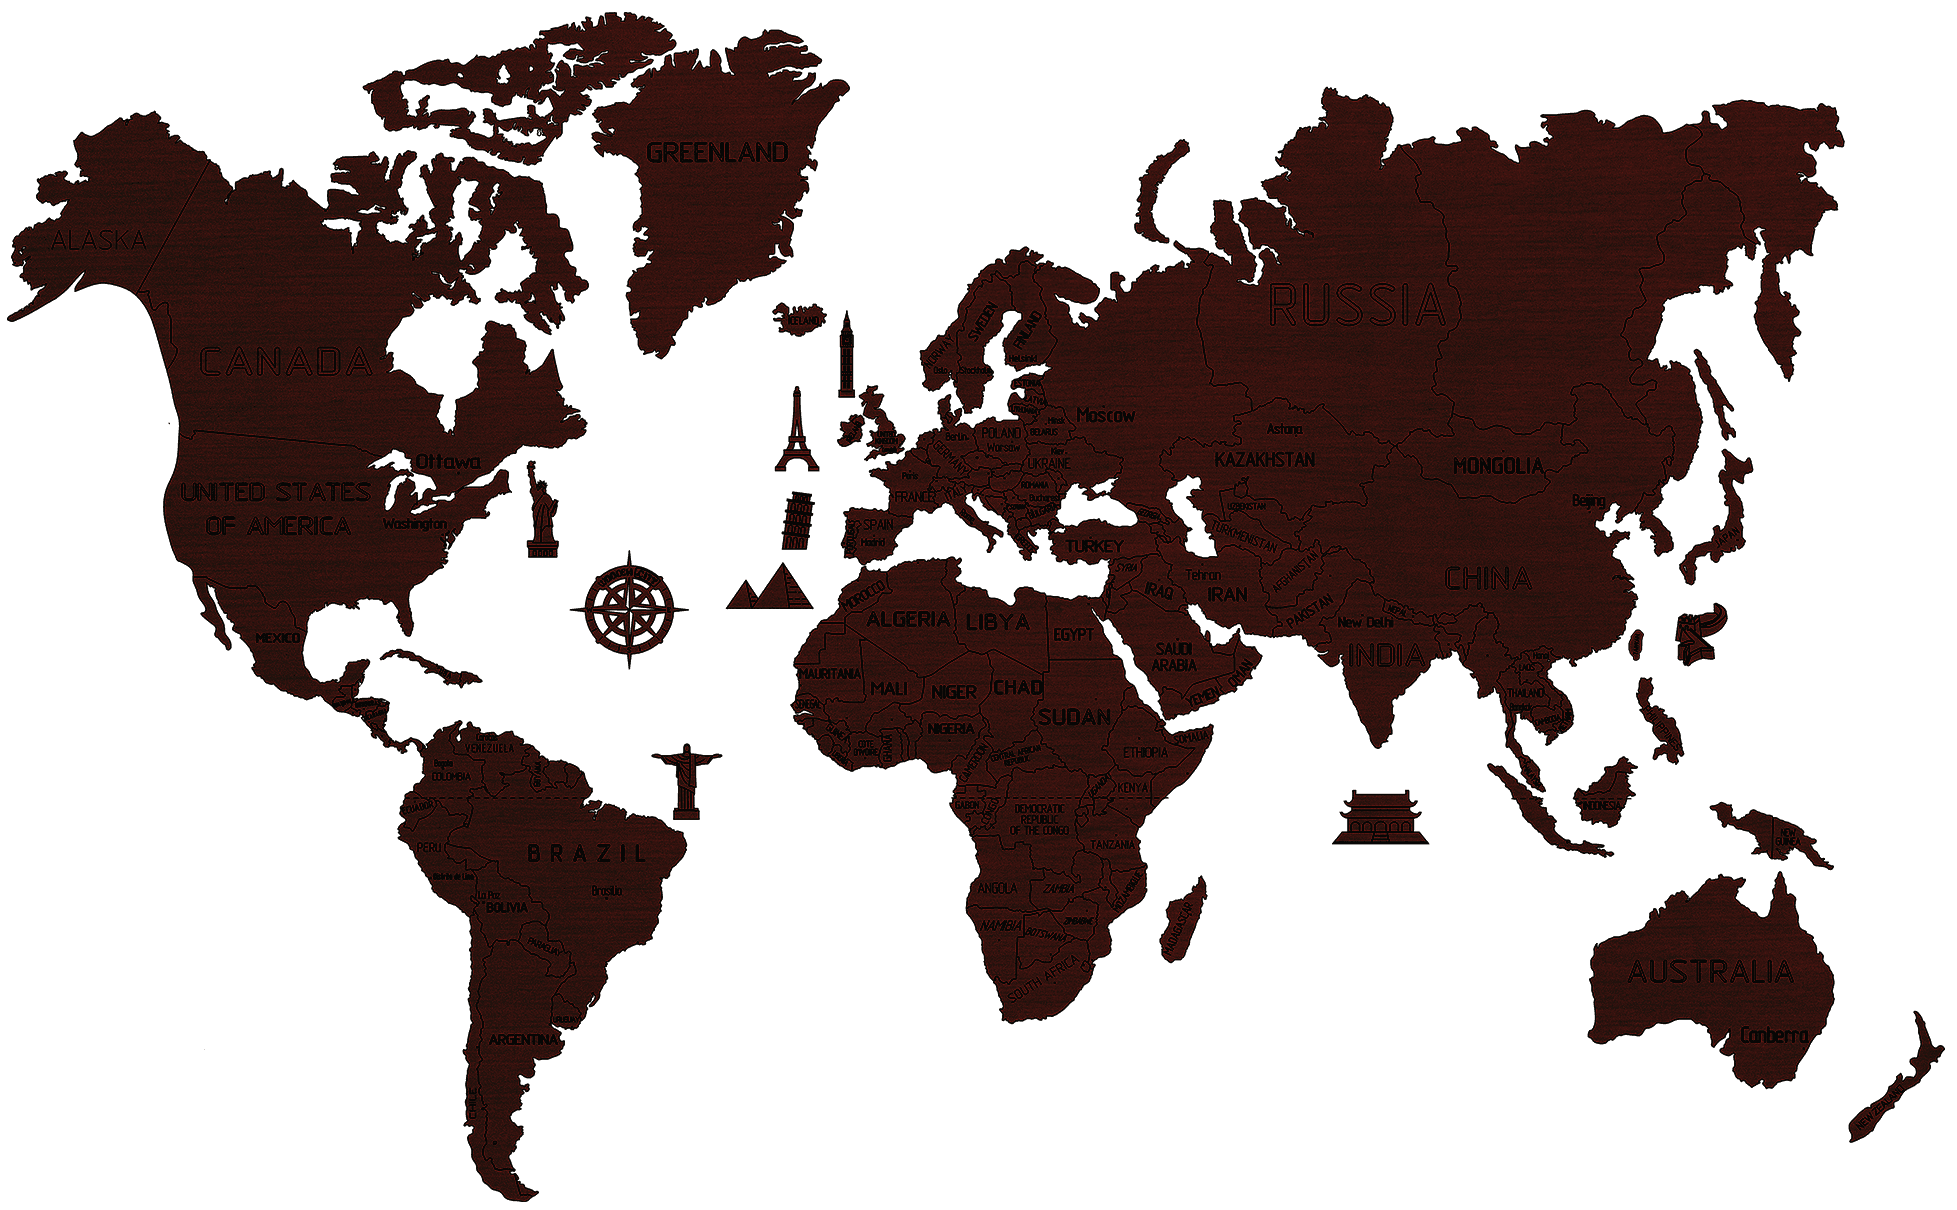 Drewniana Mapa Świata na ścianę 3D, rozm. XL – kolor ciemny dąb